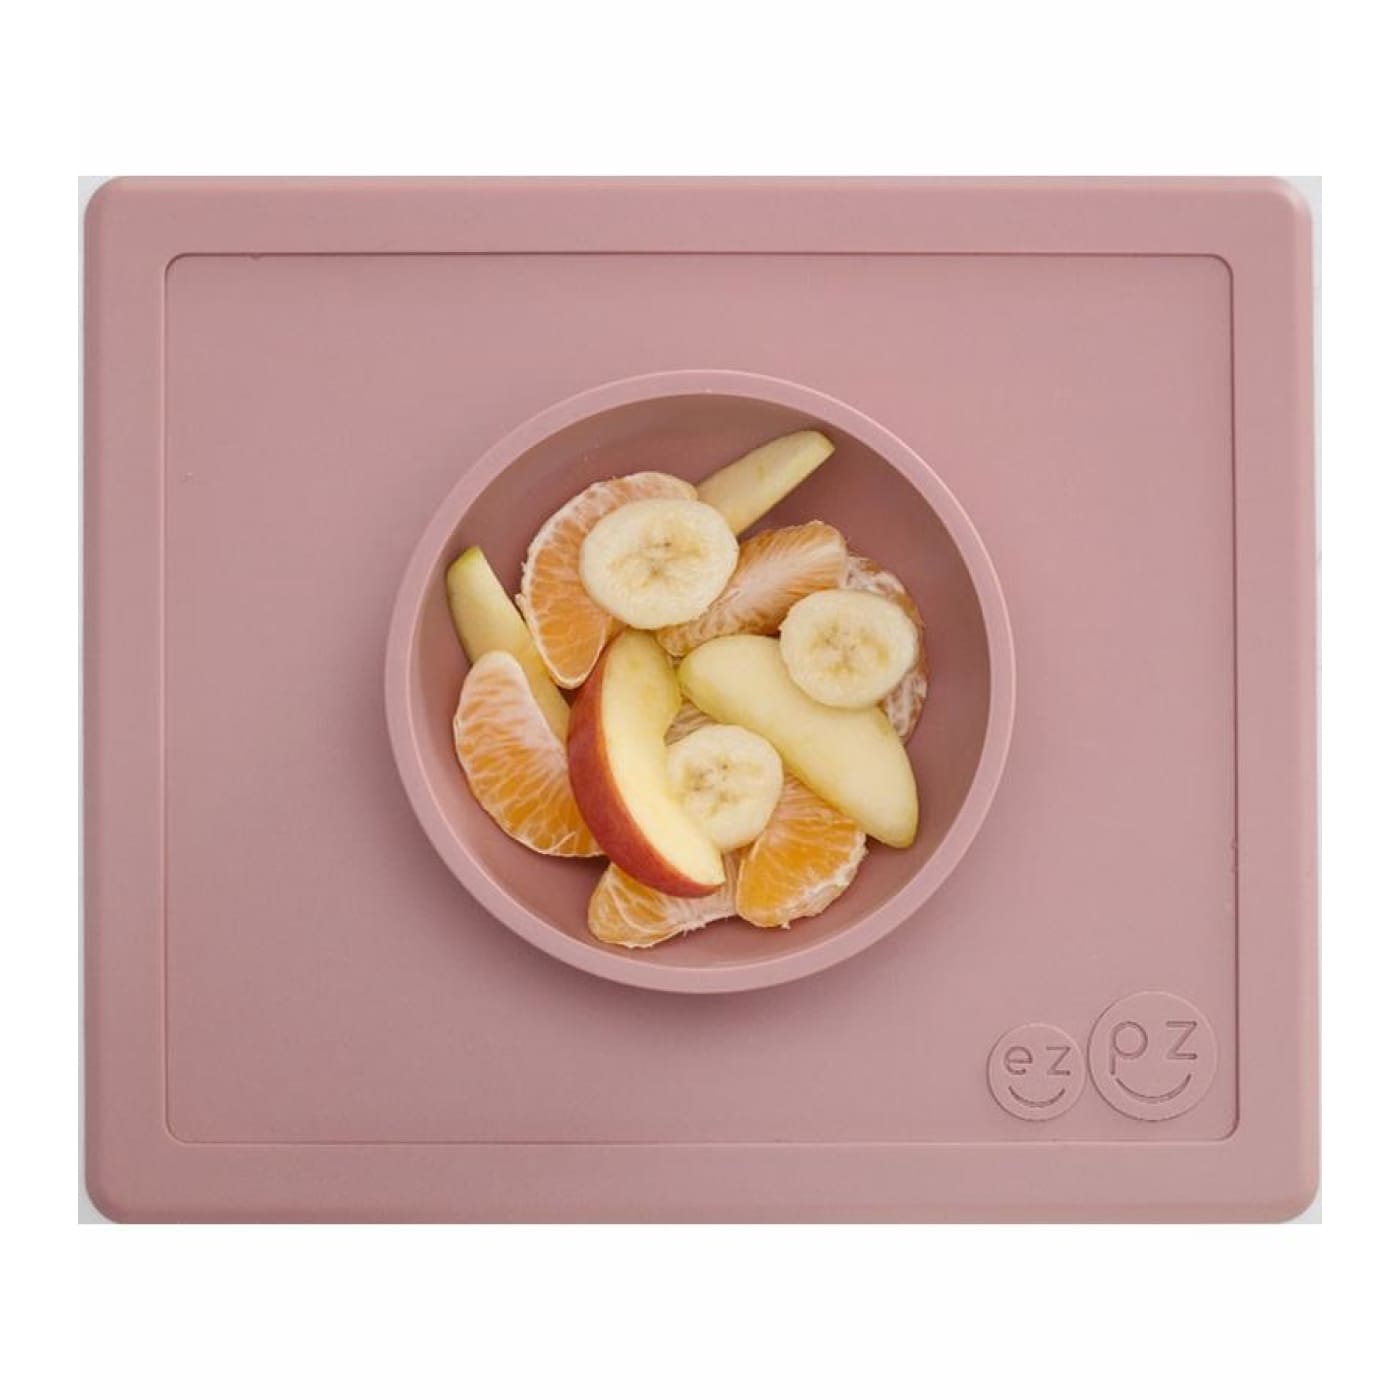 EZPZ Happy Bowl - Blush - Blush - NURSING & FEEDING - CUTLERY/PLATES/BOWLS/TOYS